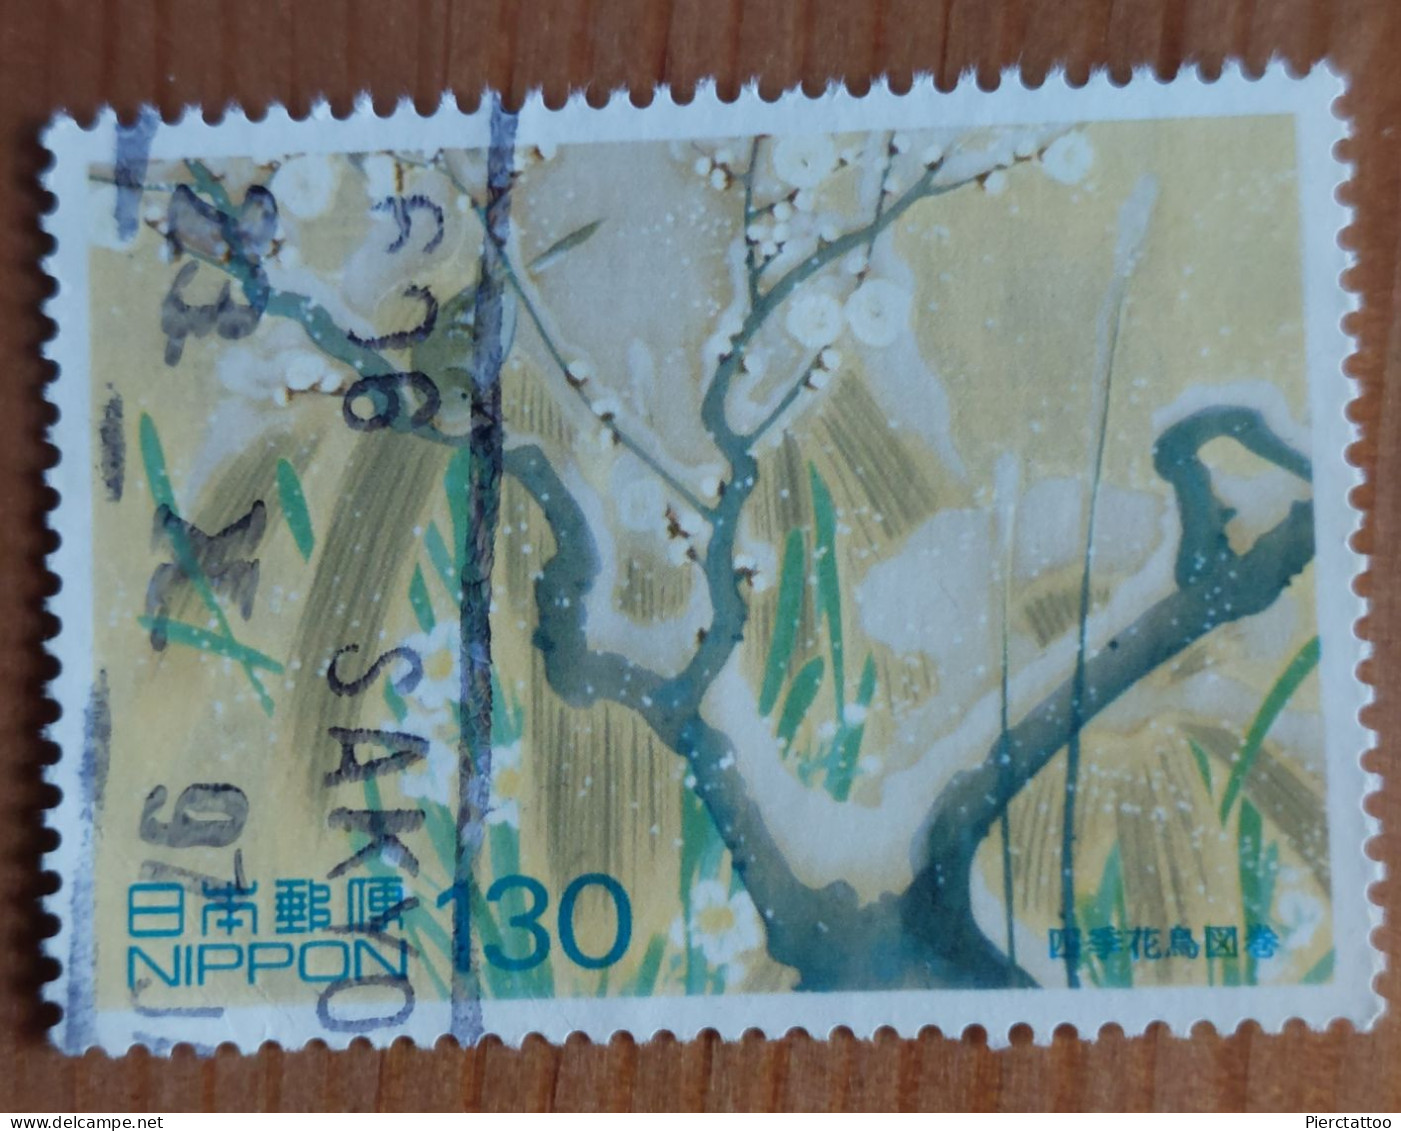 Semaine De La Lettre (Arbre) - Japon - 1997 - YT 2371 - Used Stamps